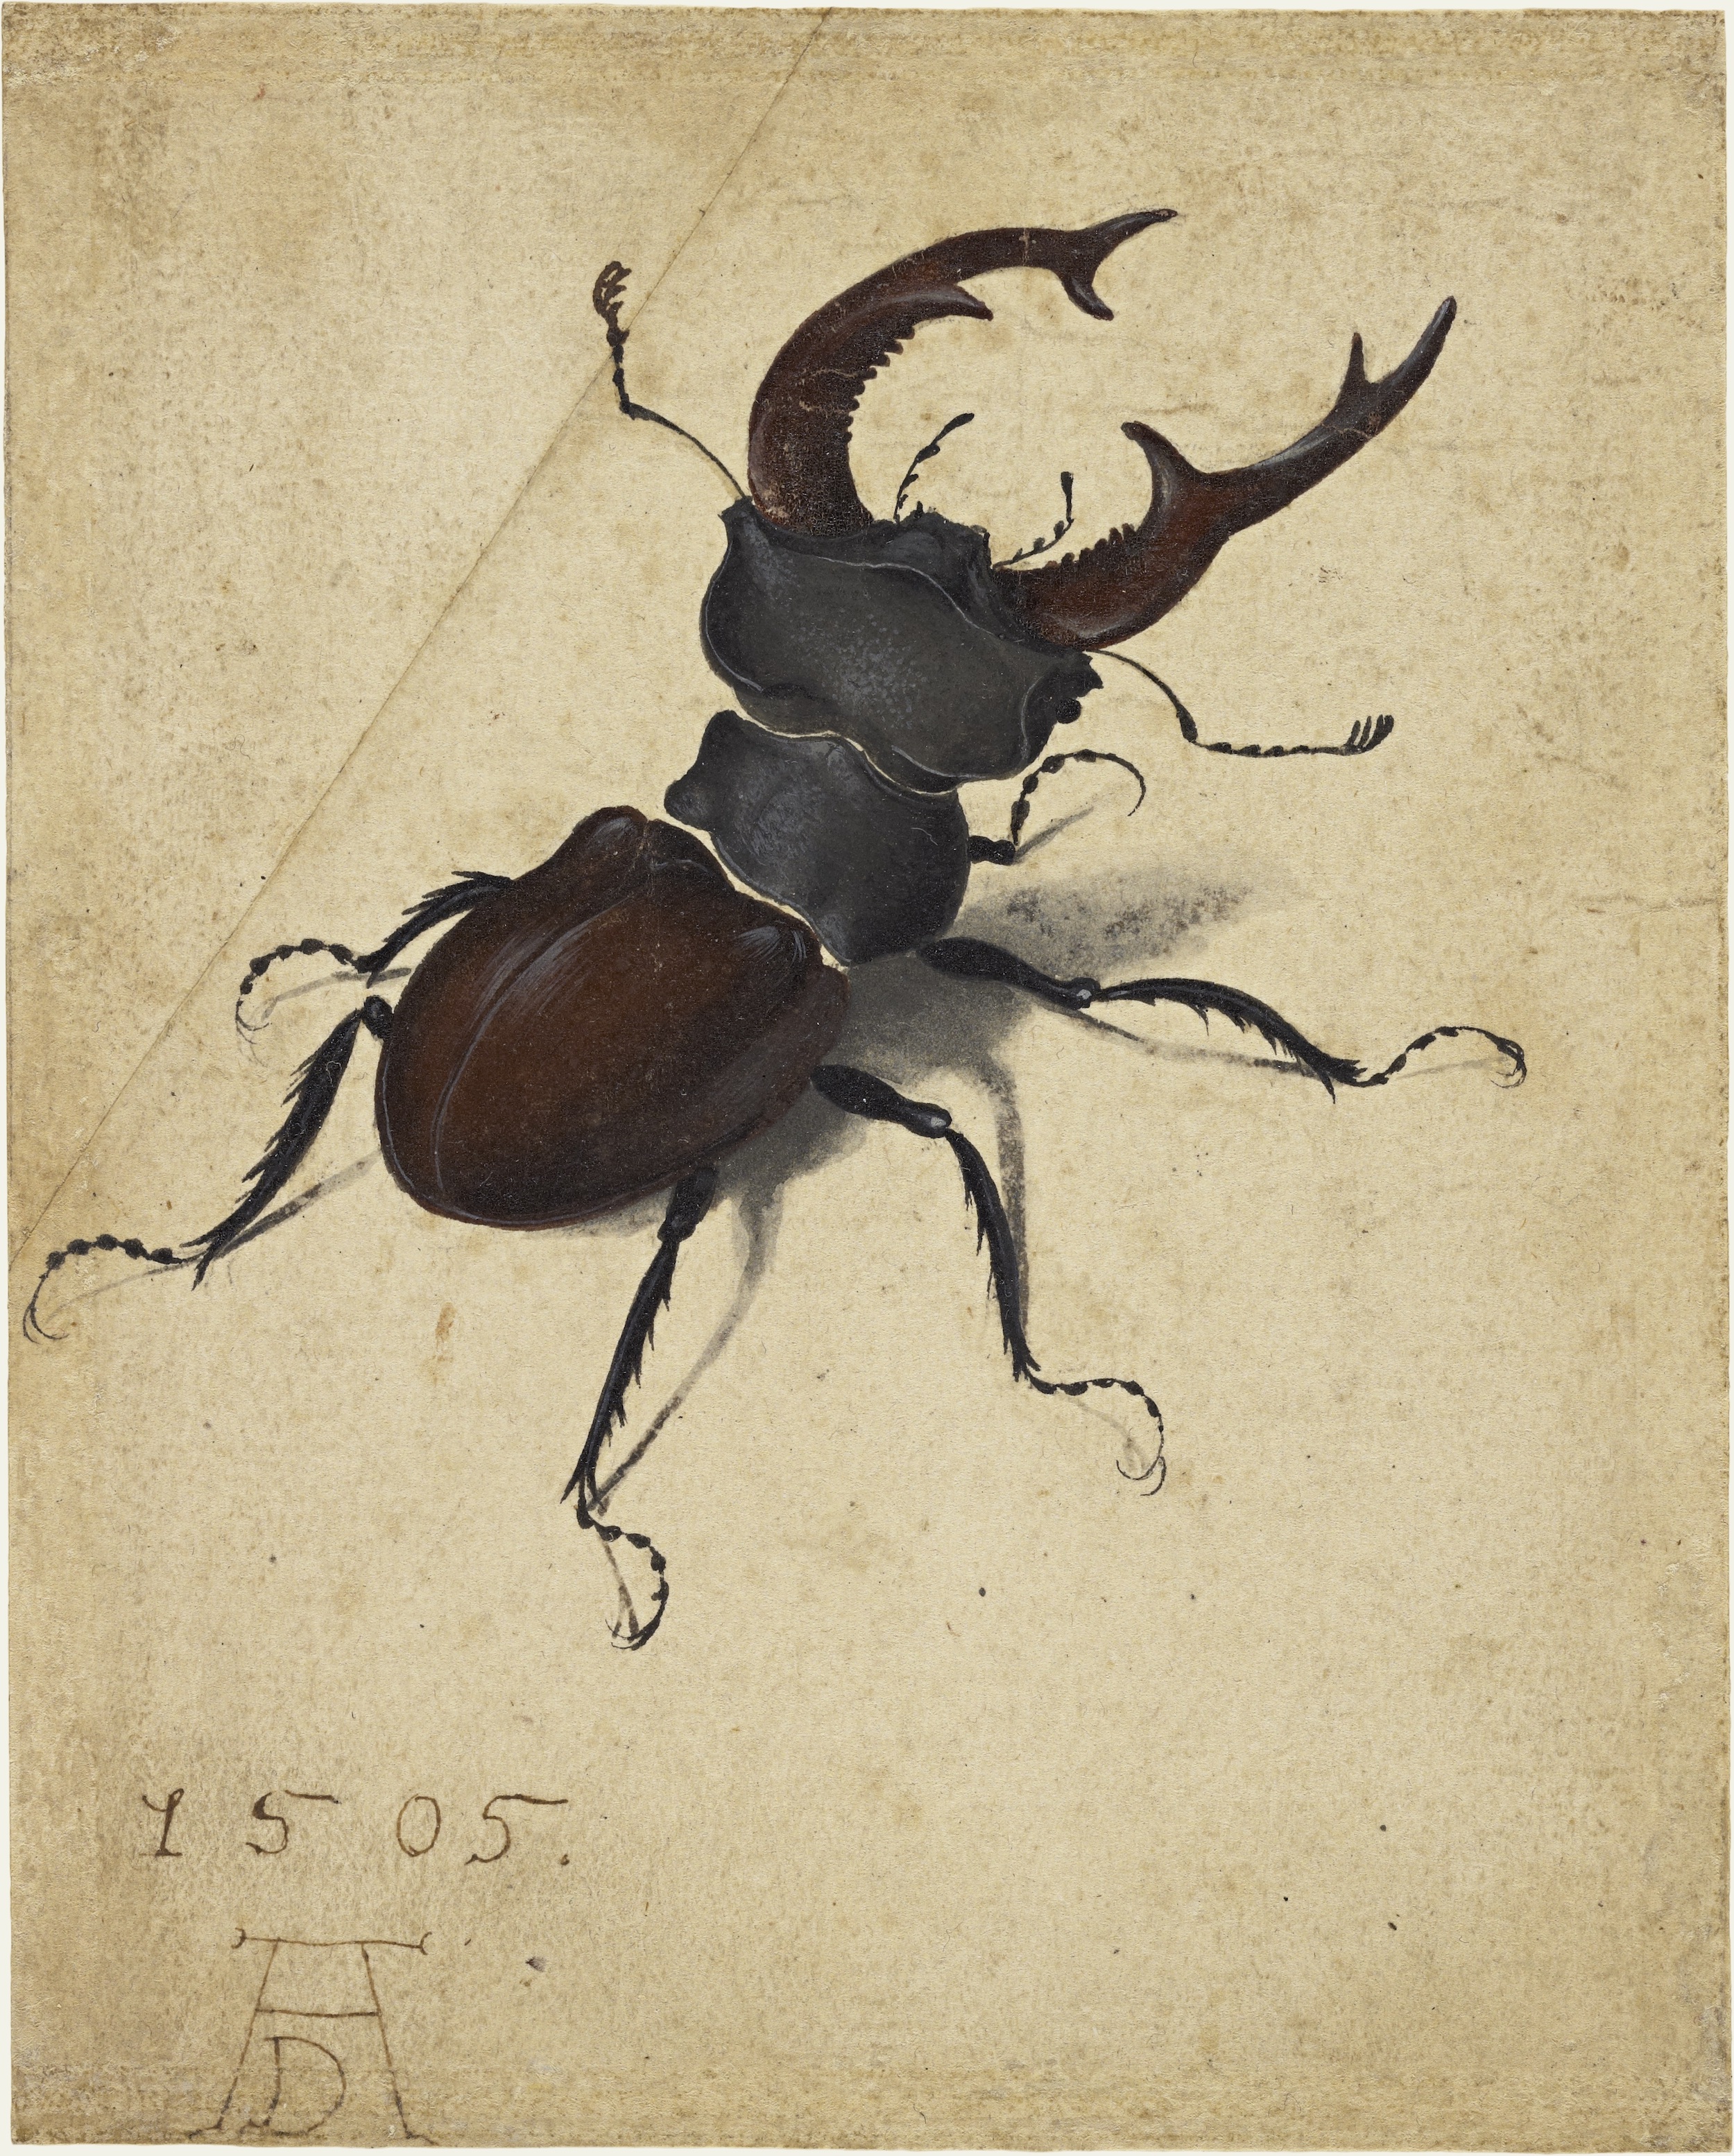 Stag Beetle by Albrecht Dürer - 1505 - 5 9/16 x 4 1/2 in J. Paul Getty Museum